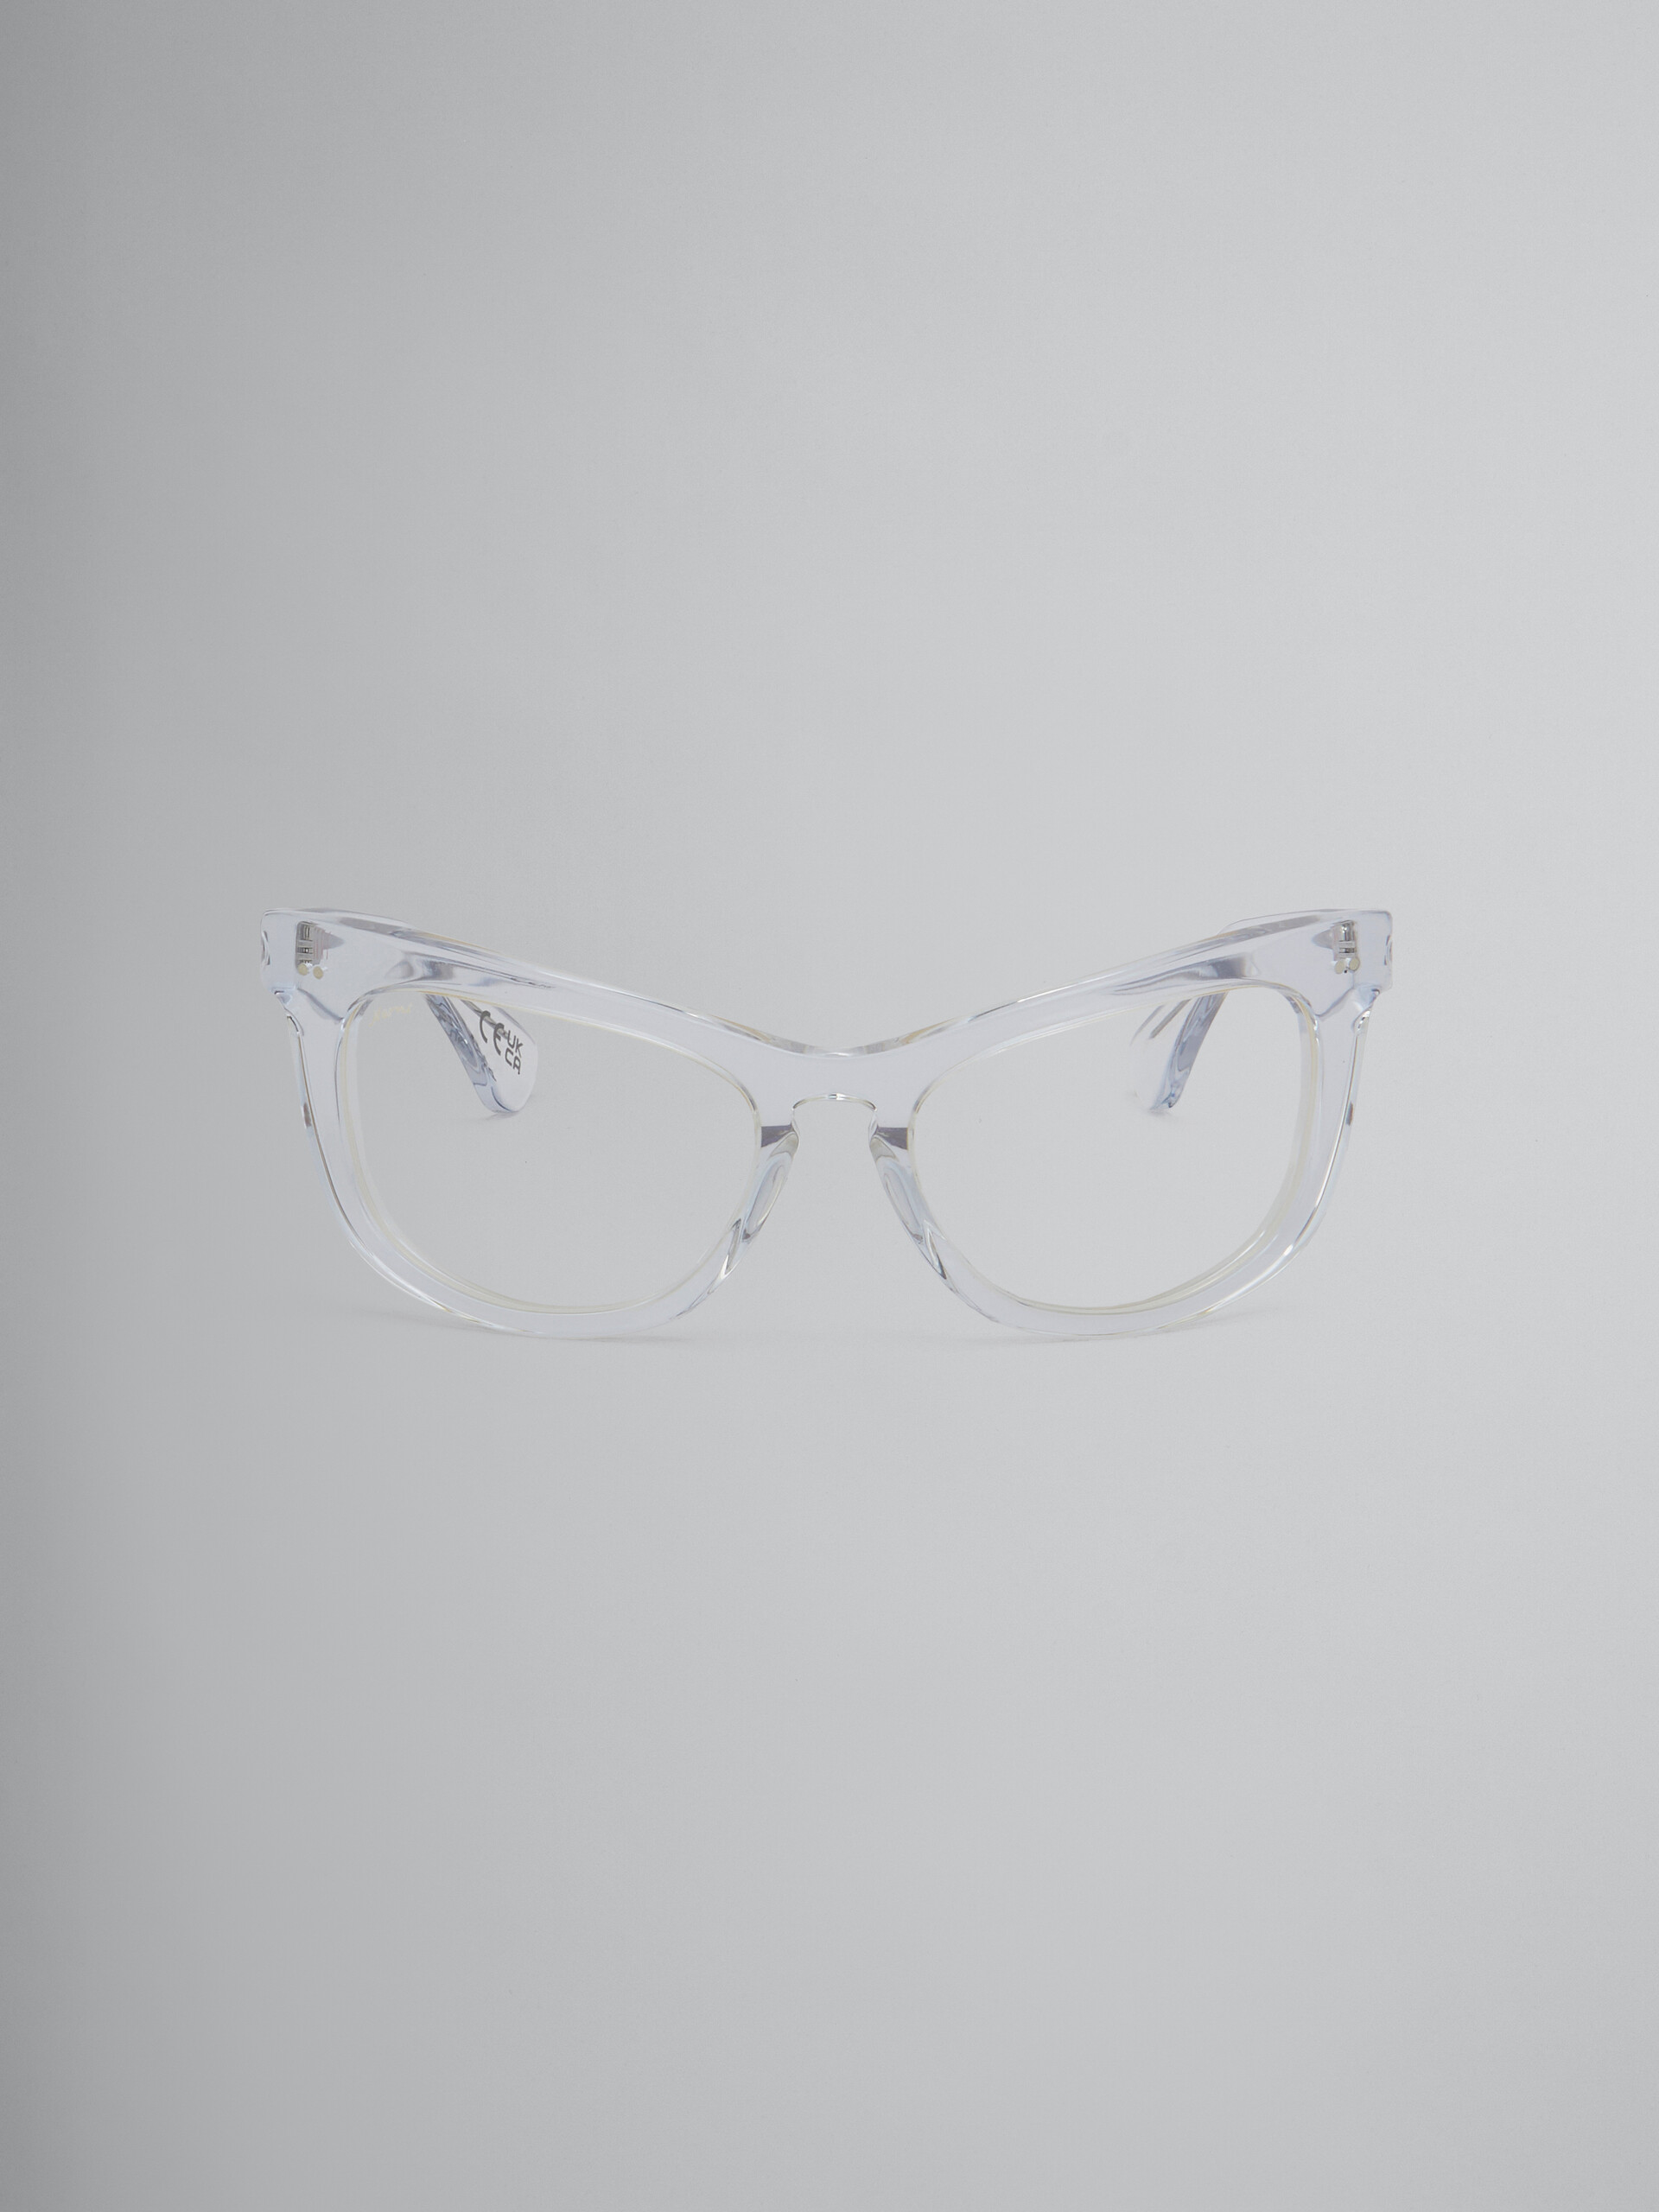 Schwarze Sehbrille Isamu - Optisch - Image 1